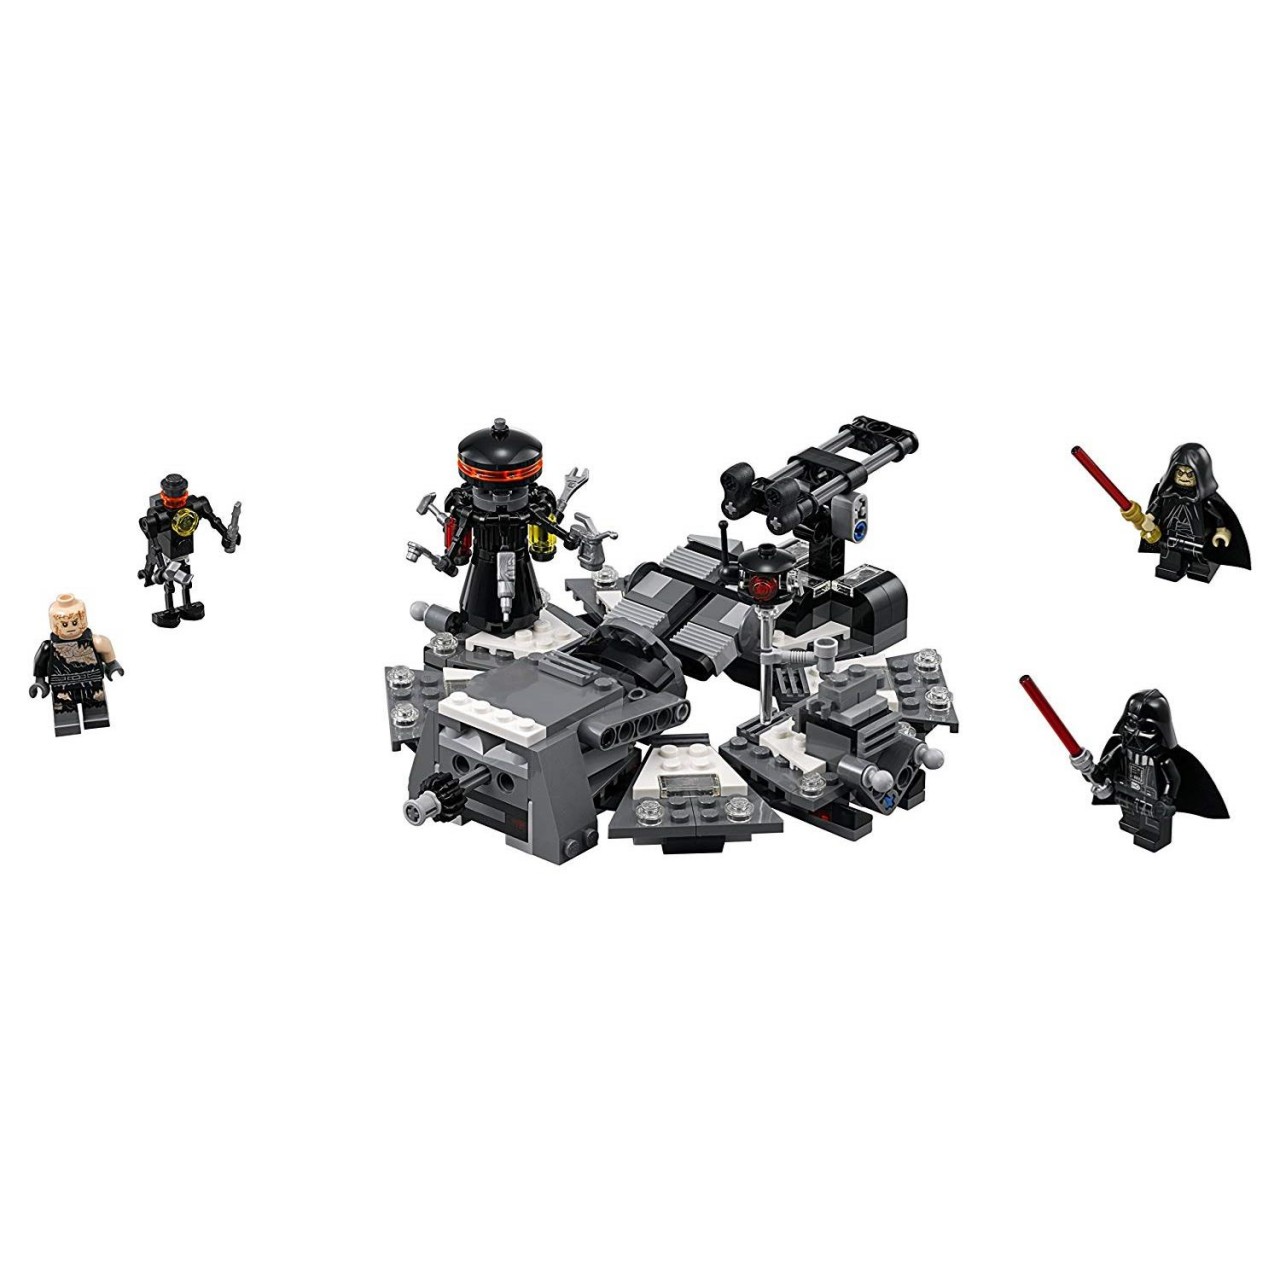 LEGO STAR WARS 75183 Darth Vader Transformation